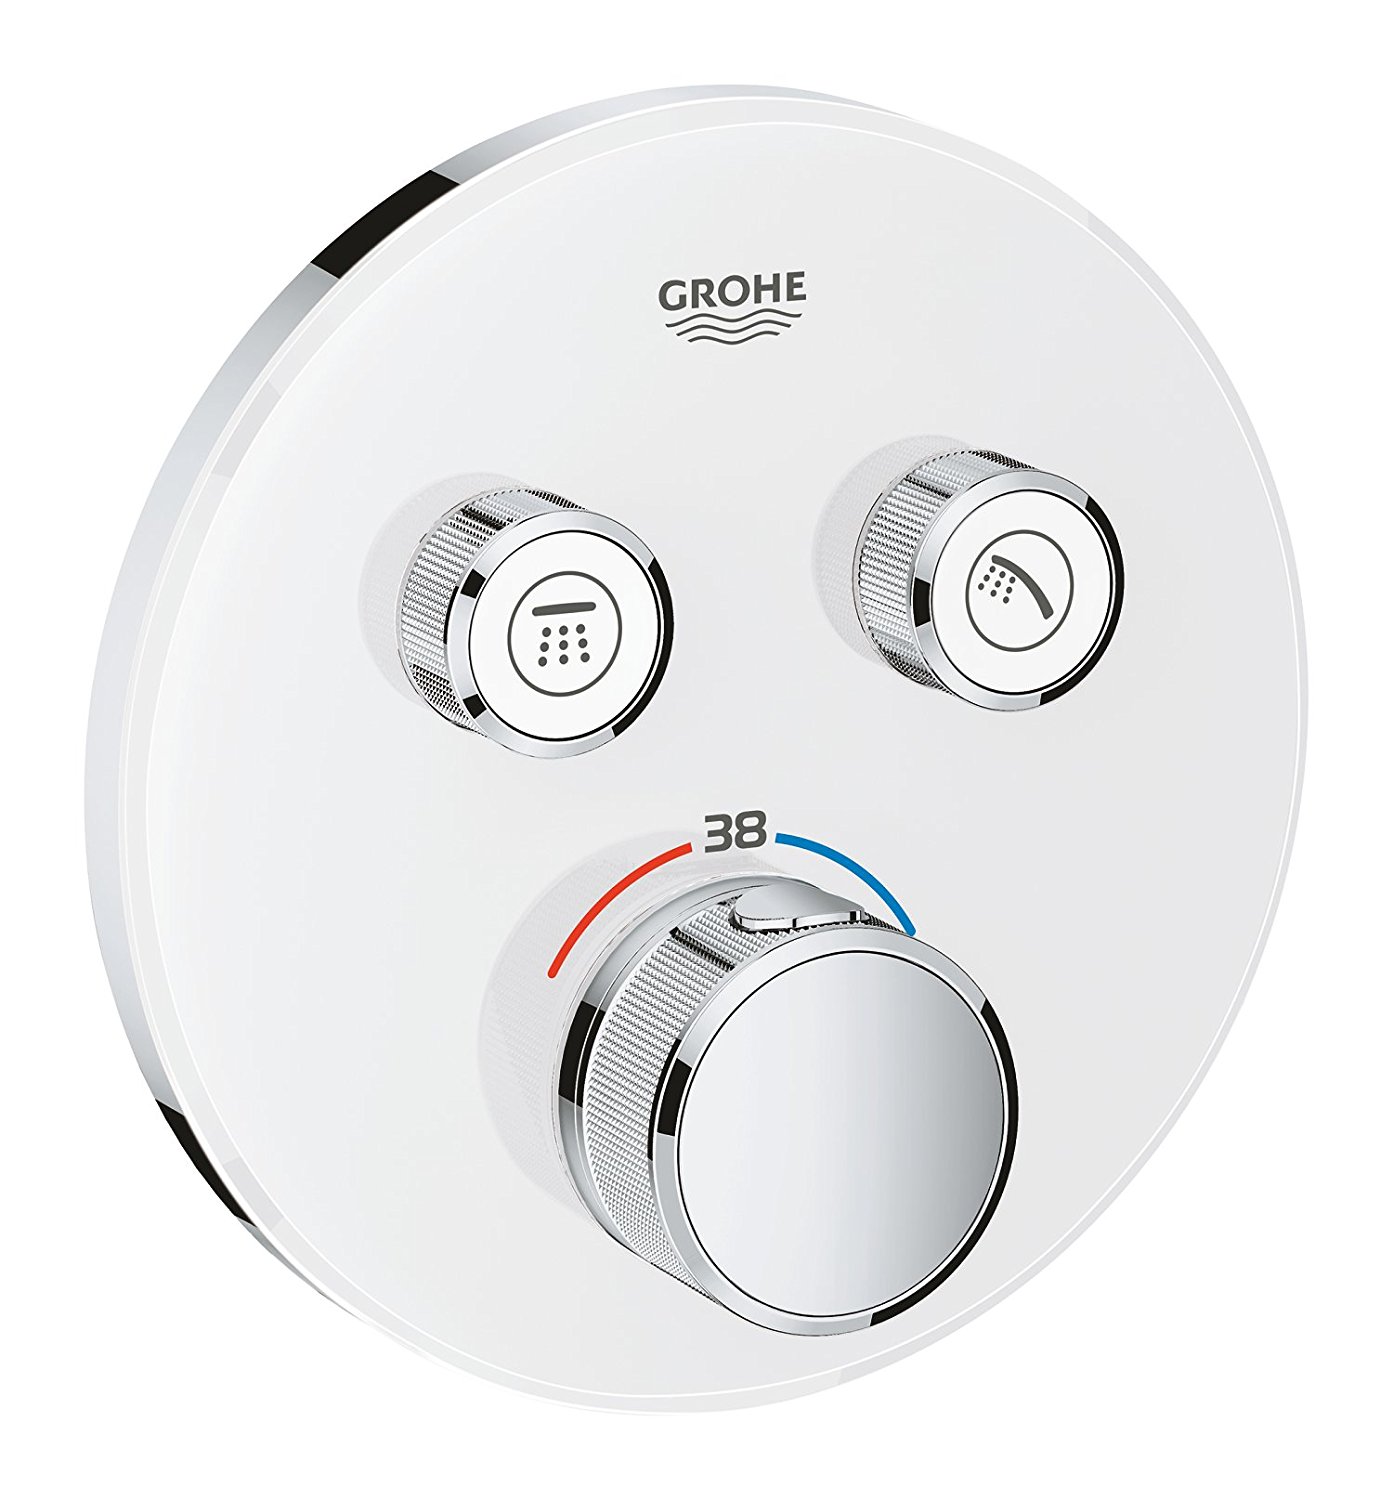 Virštinkinė termostatinio maišytuvo dalis Grohtherm SmartControl,2 valdikliai, balta